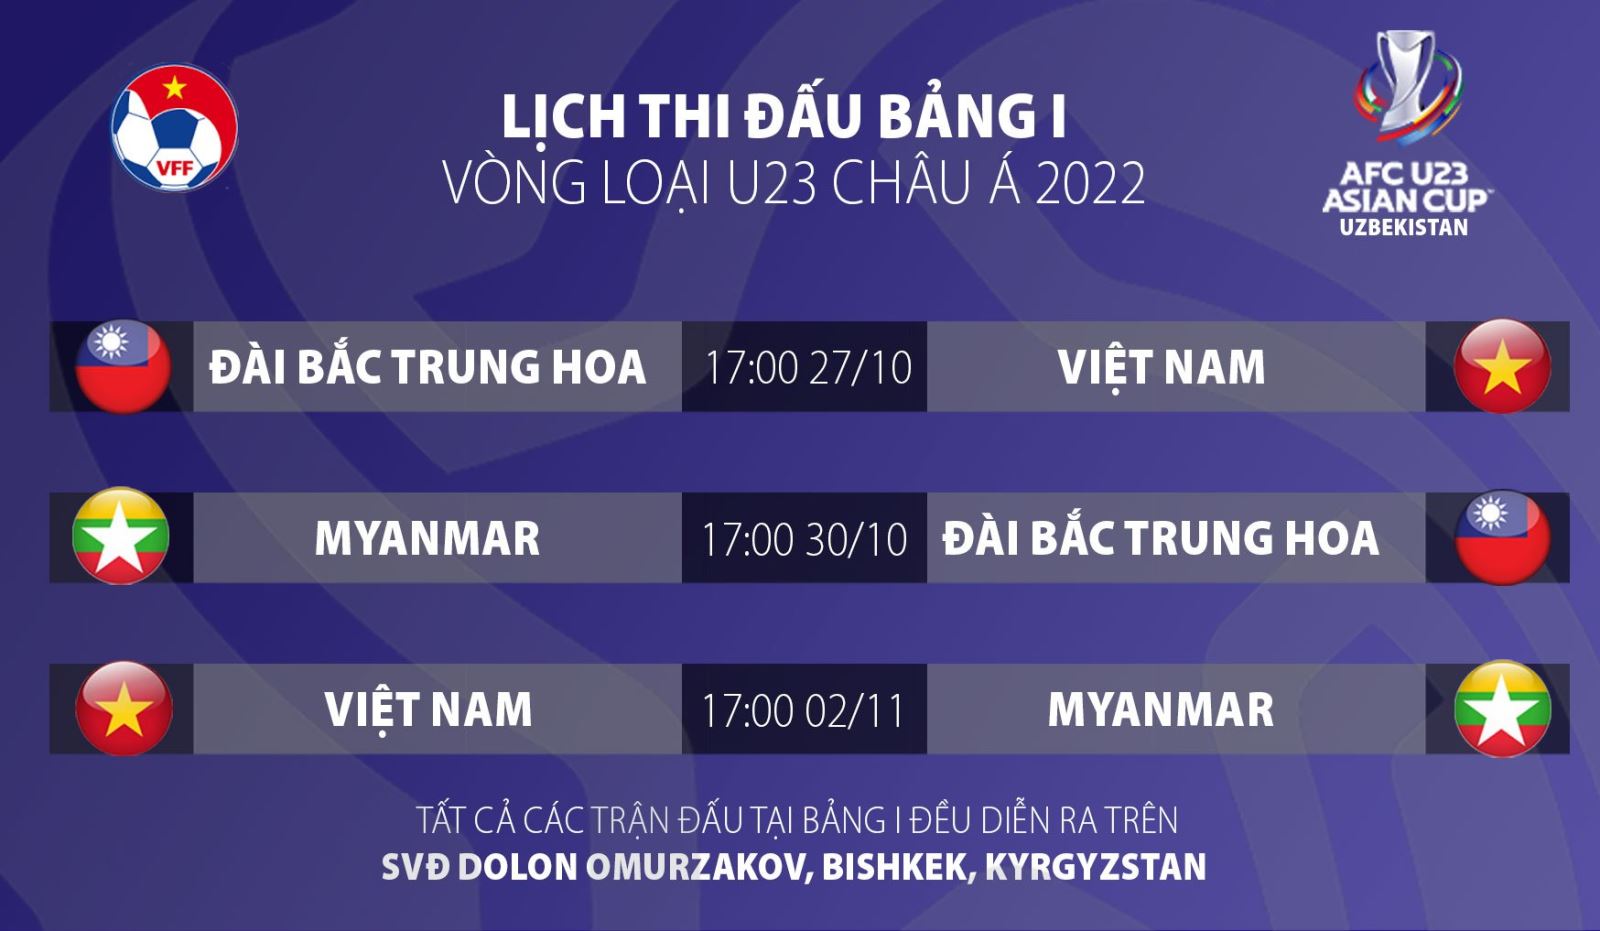 bóng đá Việt Nam, tin tức bóng đá, Park Hang Seo, U23 Việt Nam, lịch thi đấu của U23 VN tại vòng loại U23 châu Á, U23 Việt Nam chốt danh sách, danh sách U23 Việt Nam